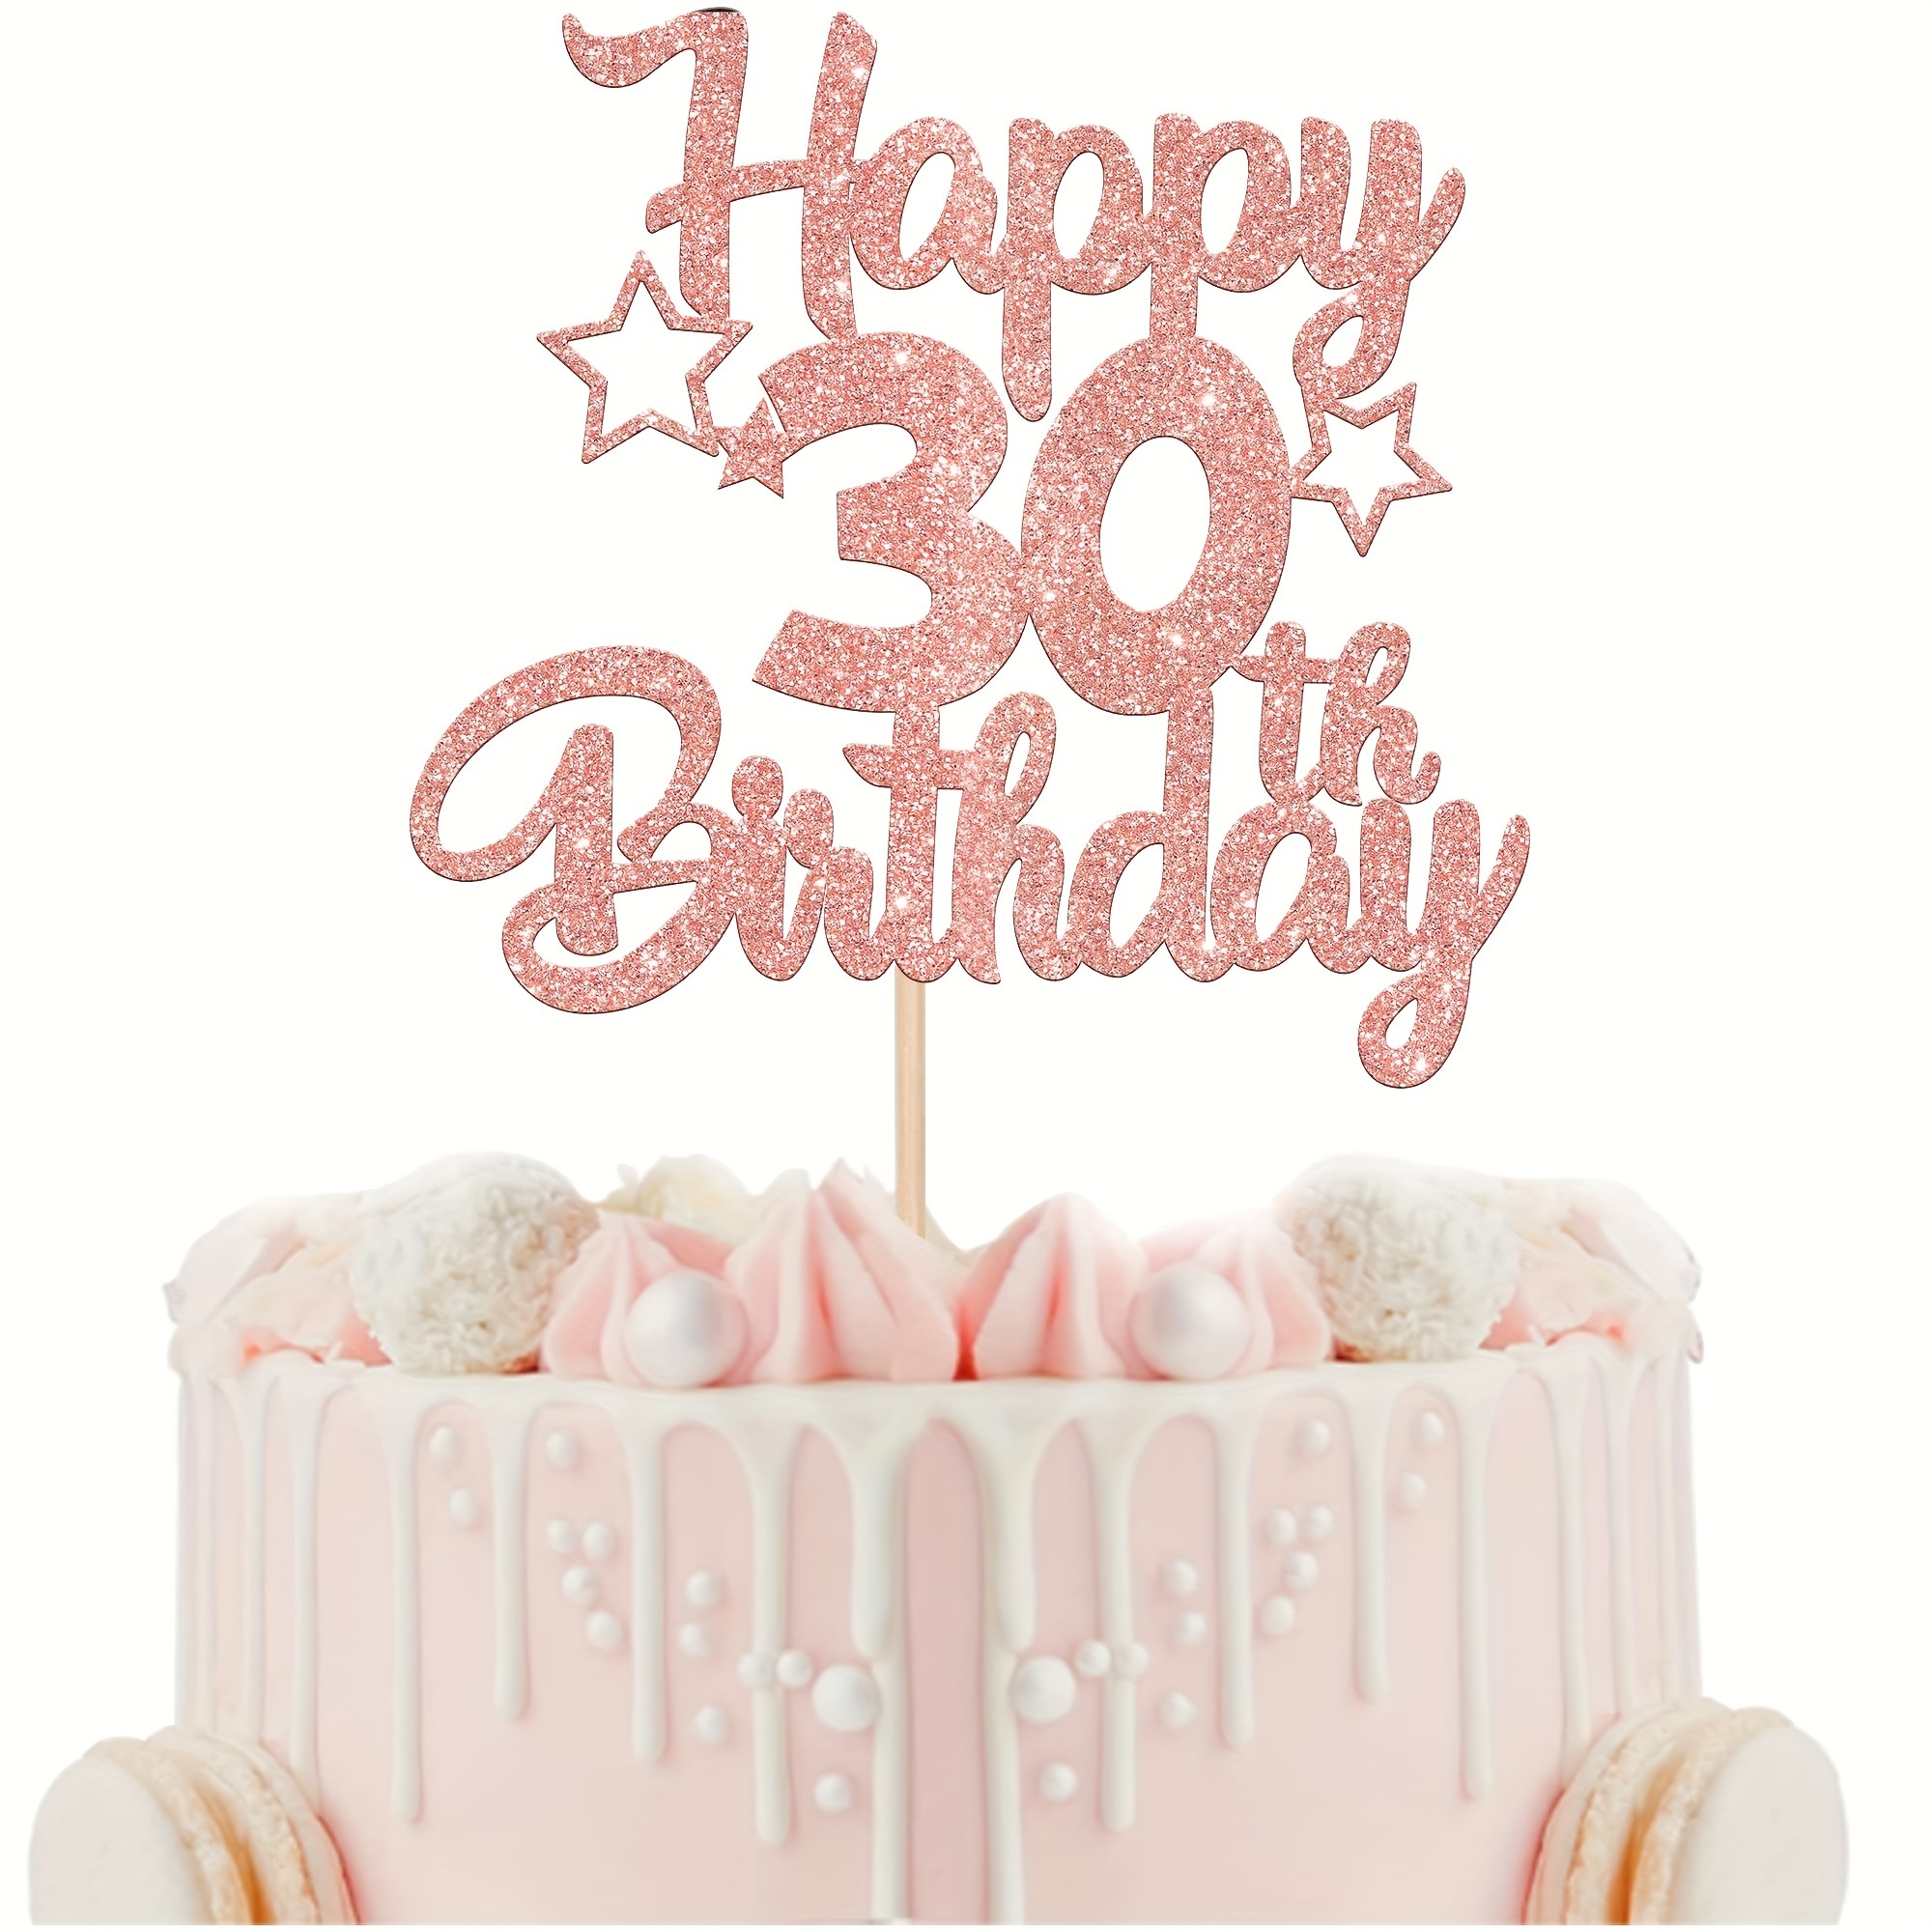 

1pc Rose Golden Glitter 30th Birthday Cake Insert, For 30th Birthday Cake Decoration, 30th Birthday Party Decoration, Rose Glitter Cheers Romantic Decoration